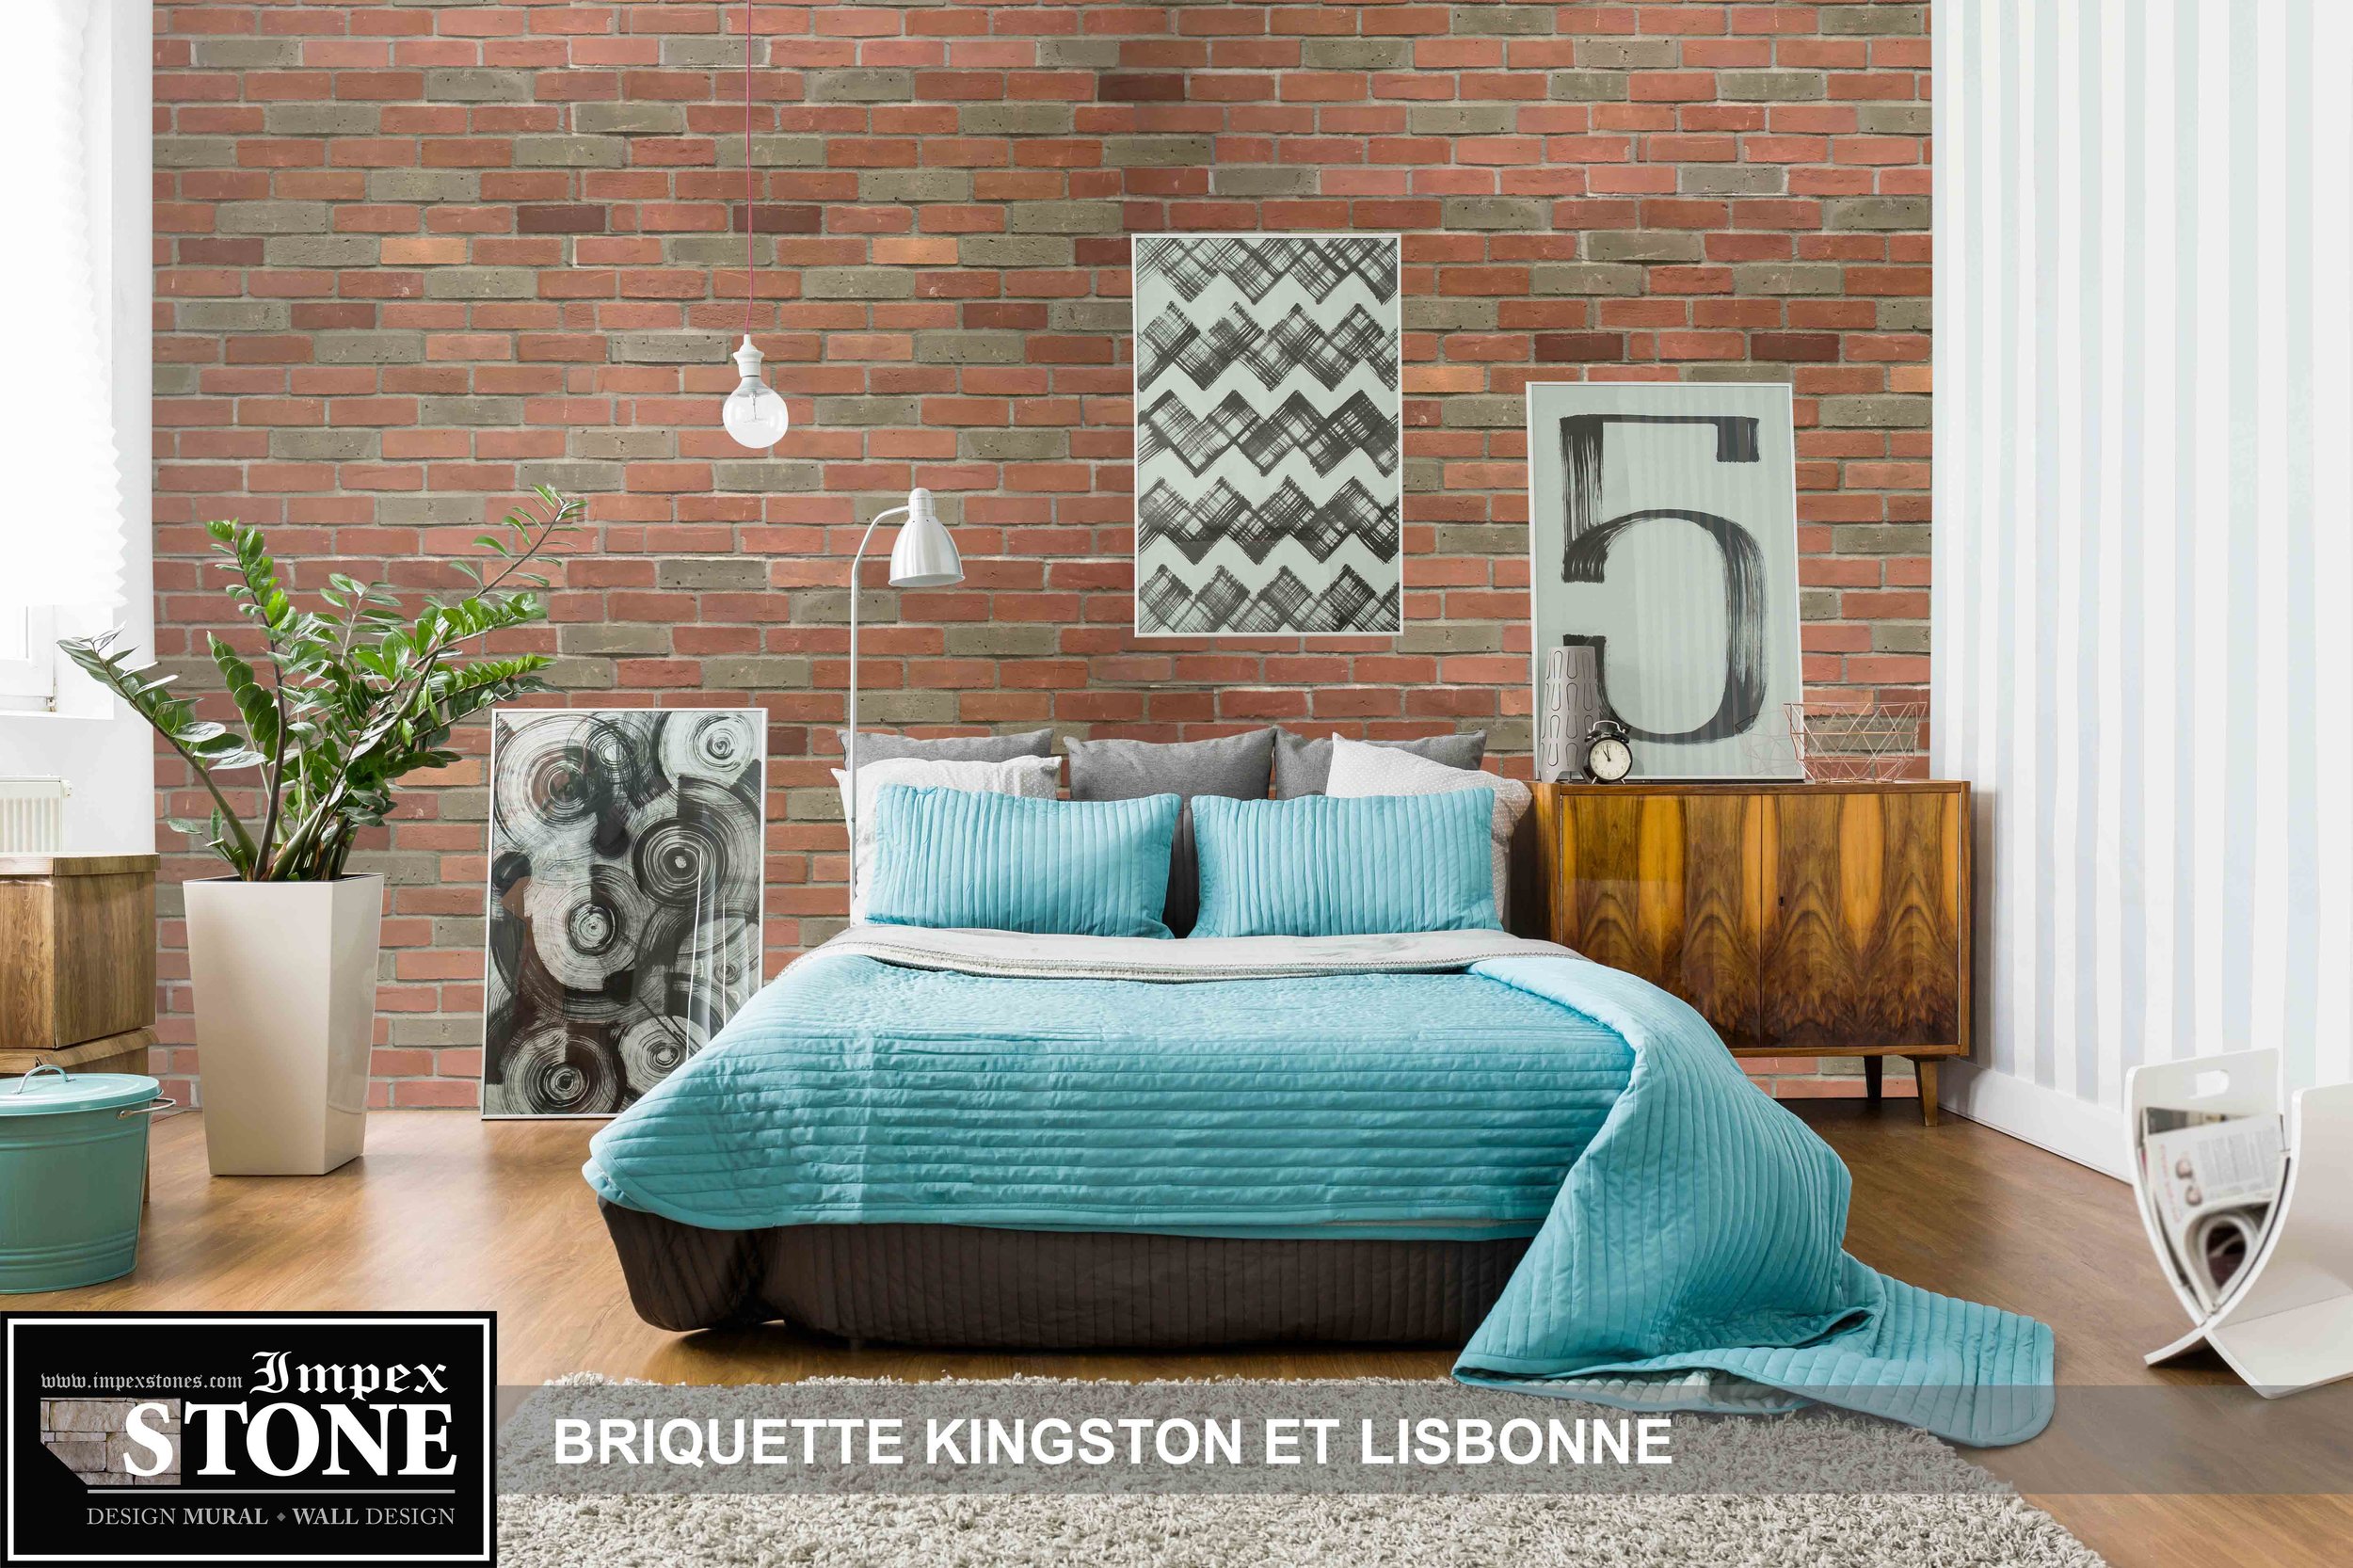 Kingston-lisbonne-chambre-logo-web.jpg